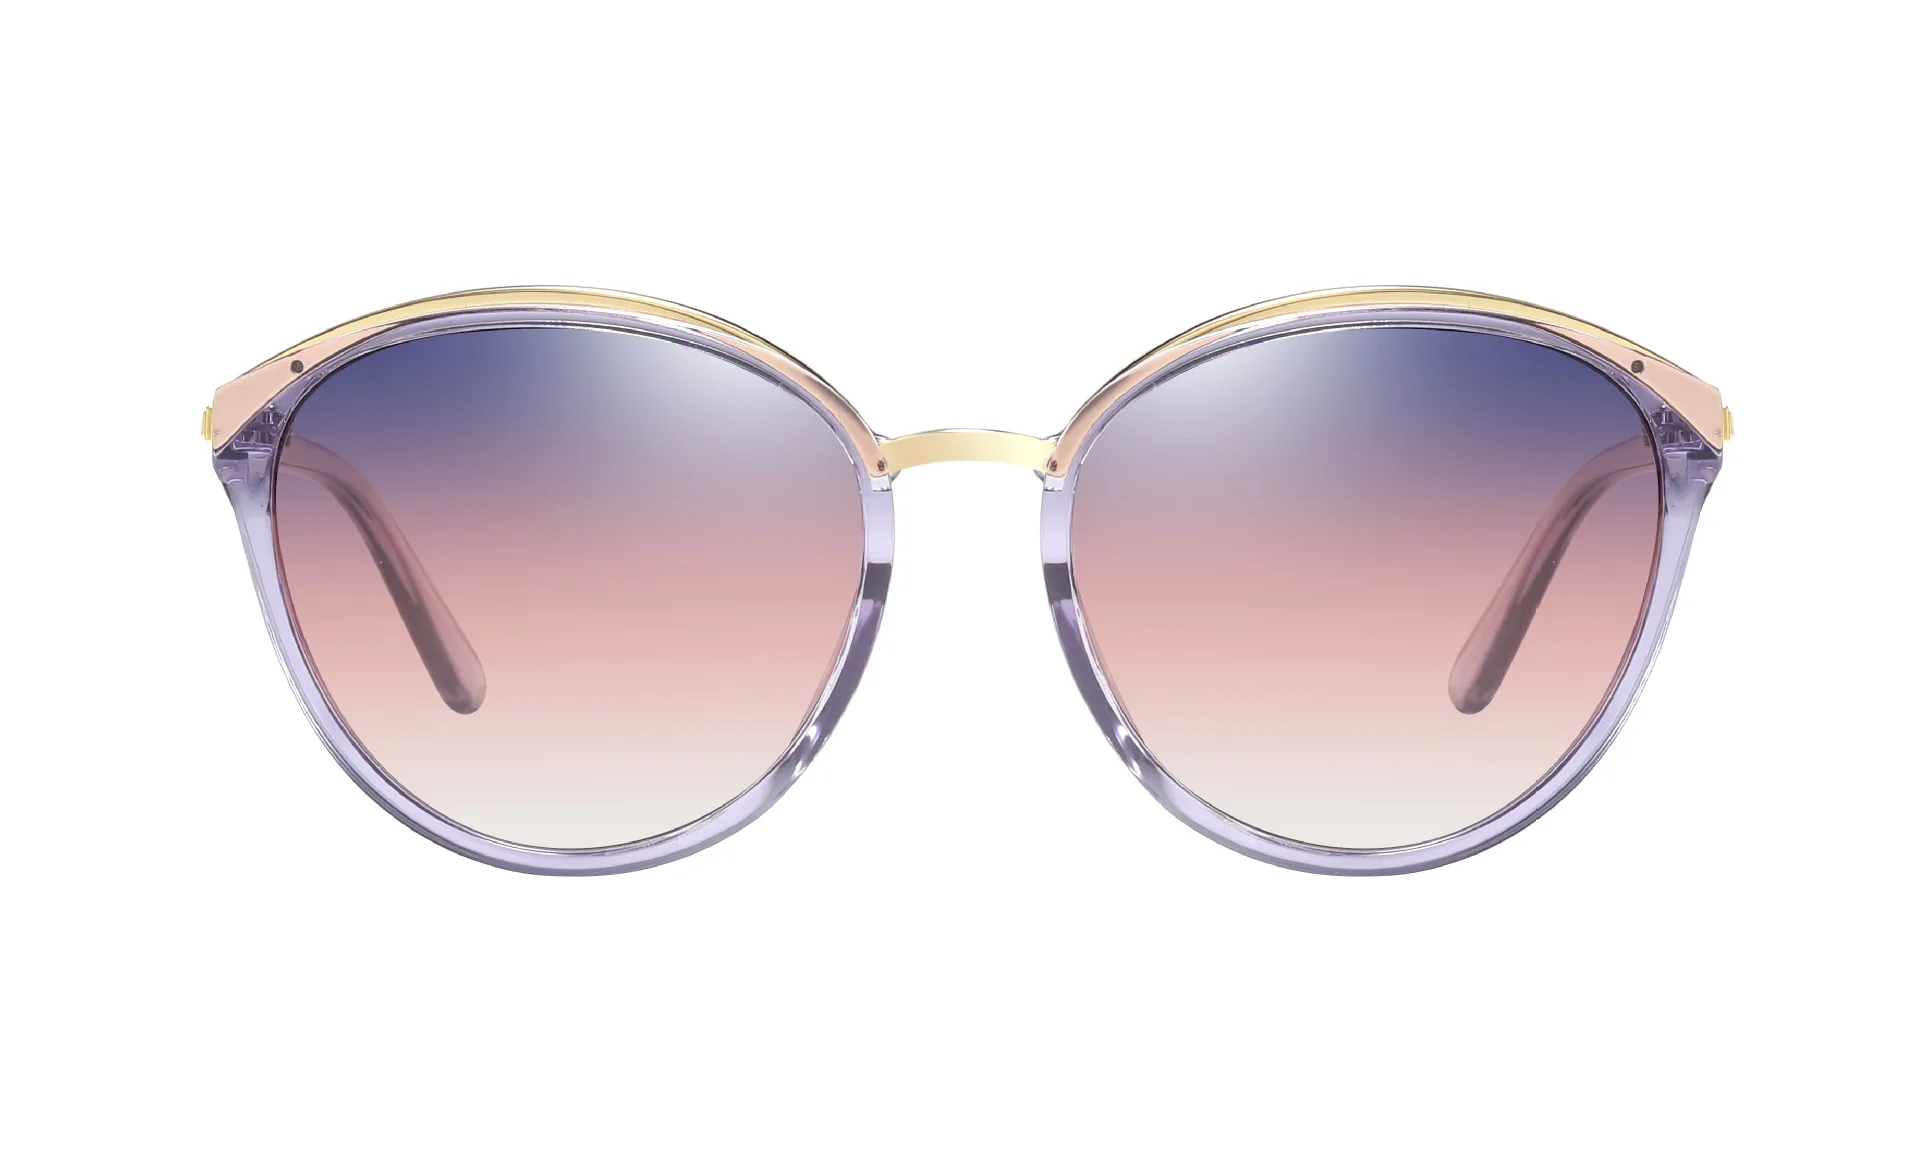 DEARMILIU дизайн женские круглые поляризованные солнцезащитные очки для вождения солнцезащитные очки «кошачий глаз» градиентные очки UV400 Gafas De Sol Оттенки для женщин